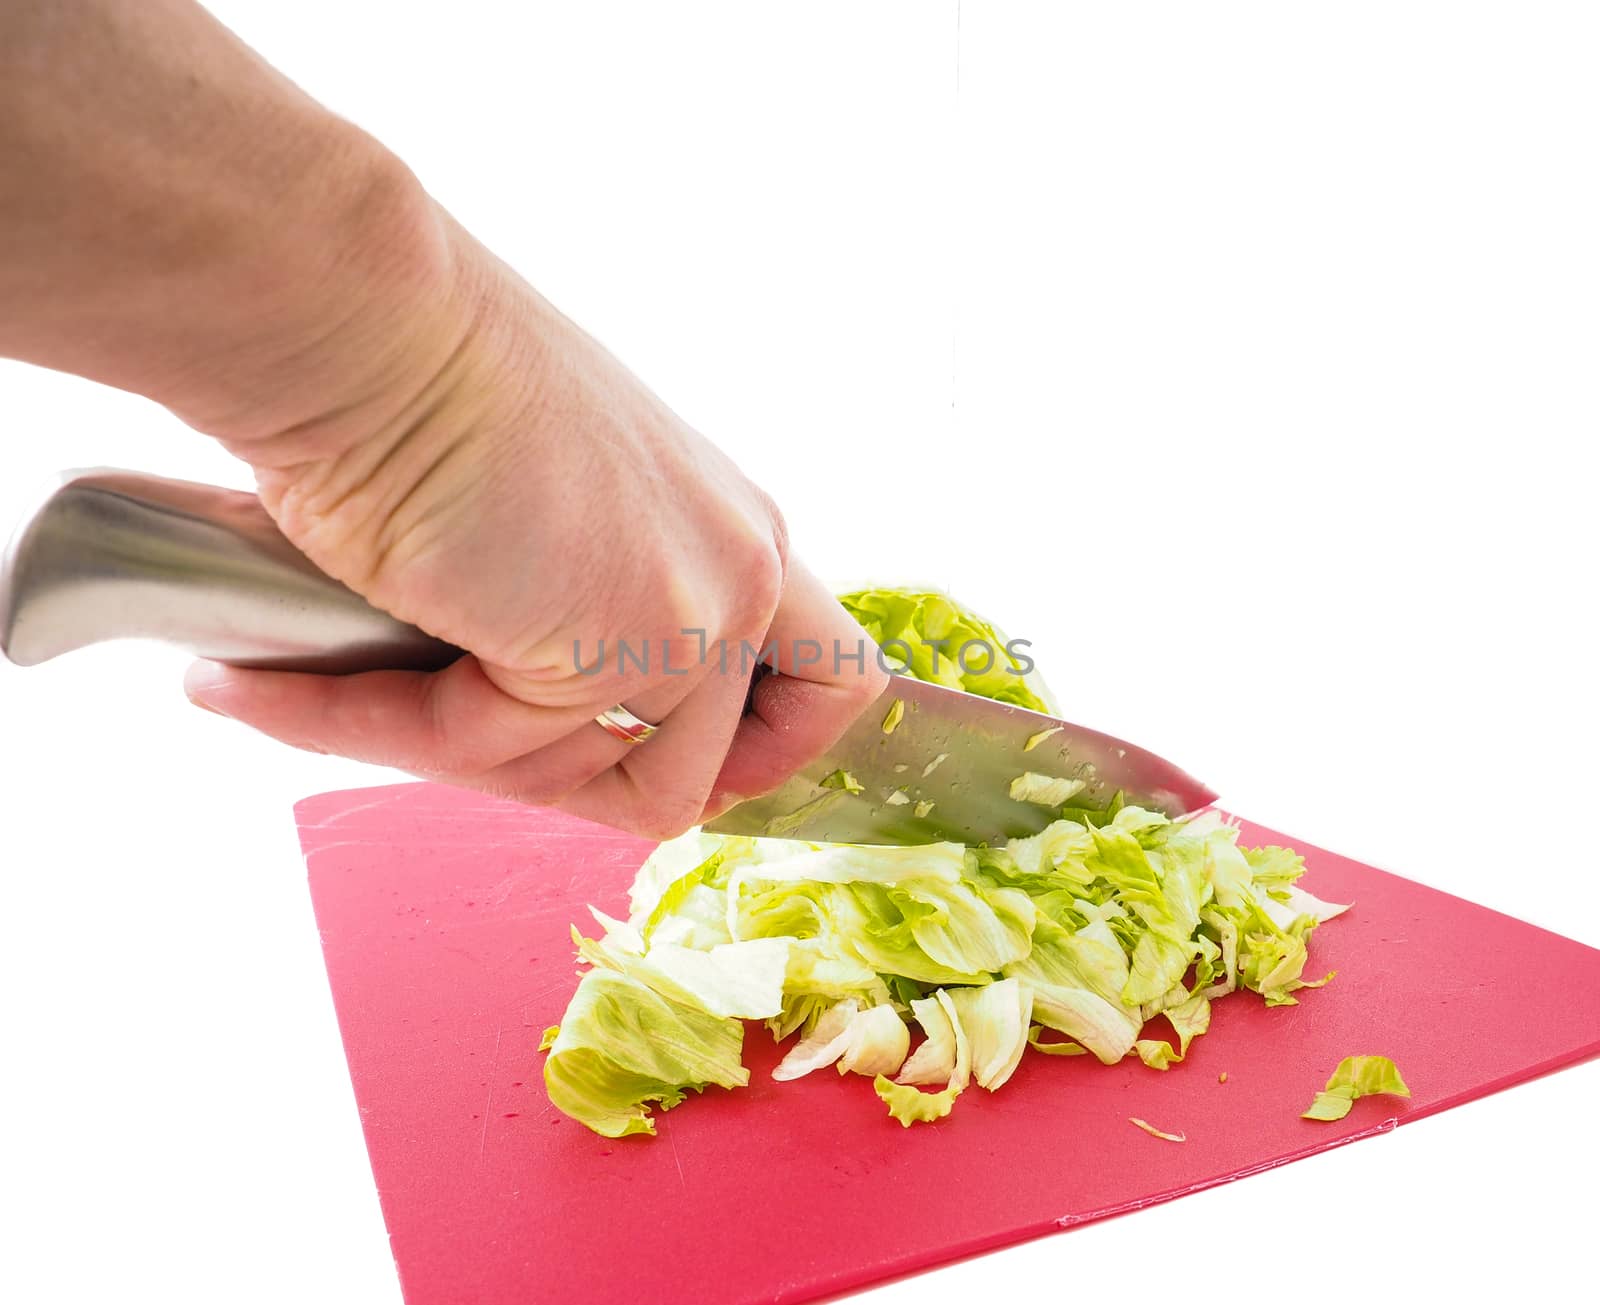 Hand cutting fresh green lettuce by Arvebettum